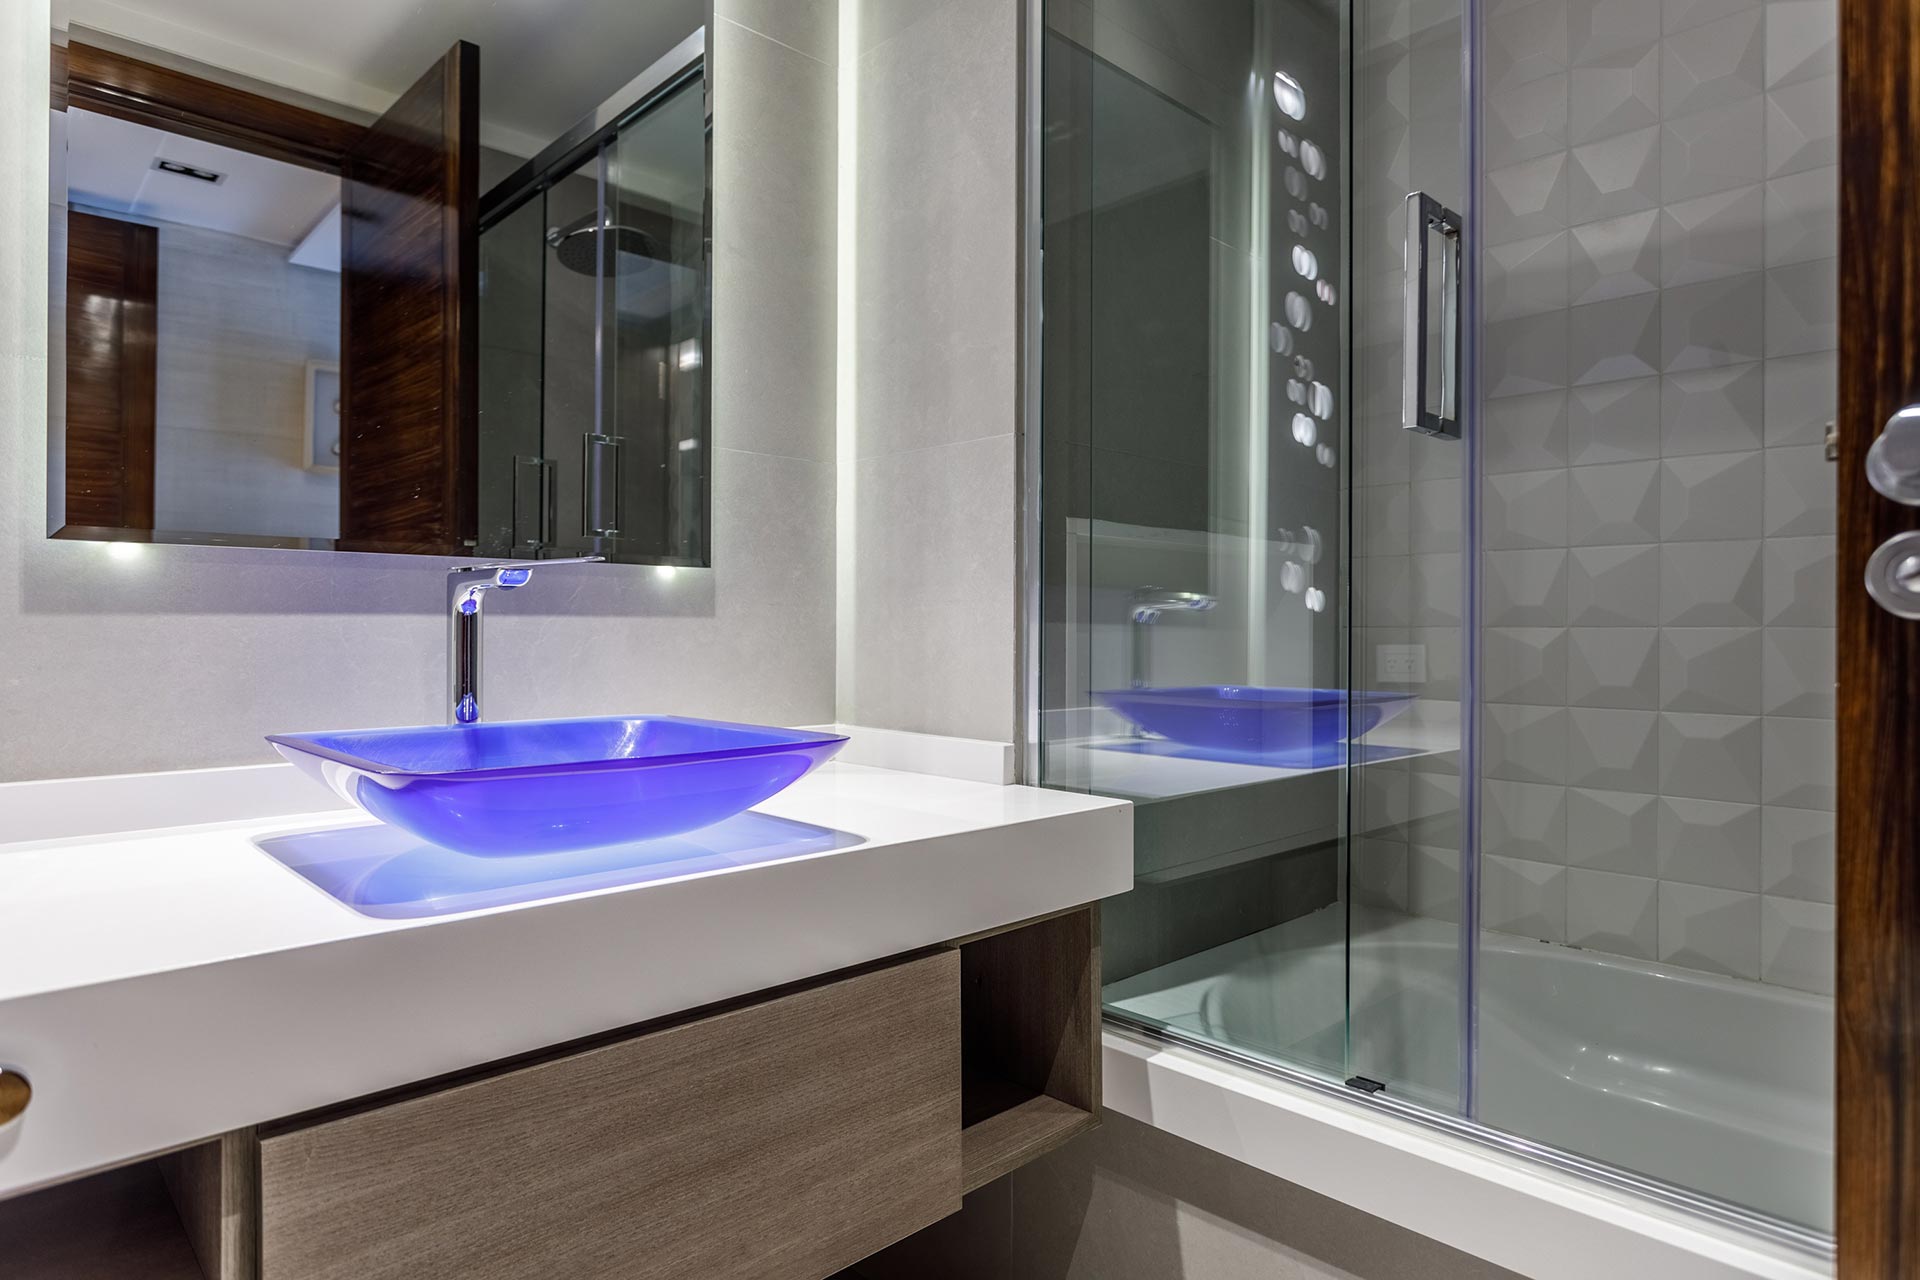 Sea vivienda premium o estándar es ideal verificar cómo funciona el agua en canillas y duchas, por ejemplo